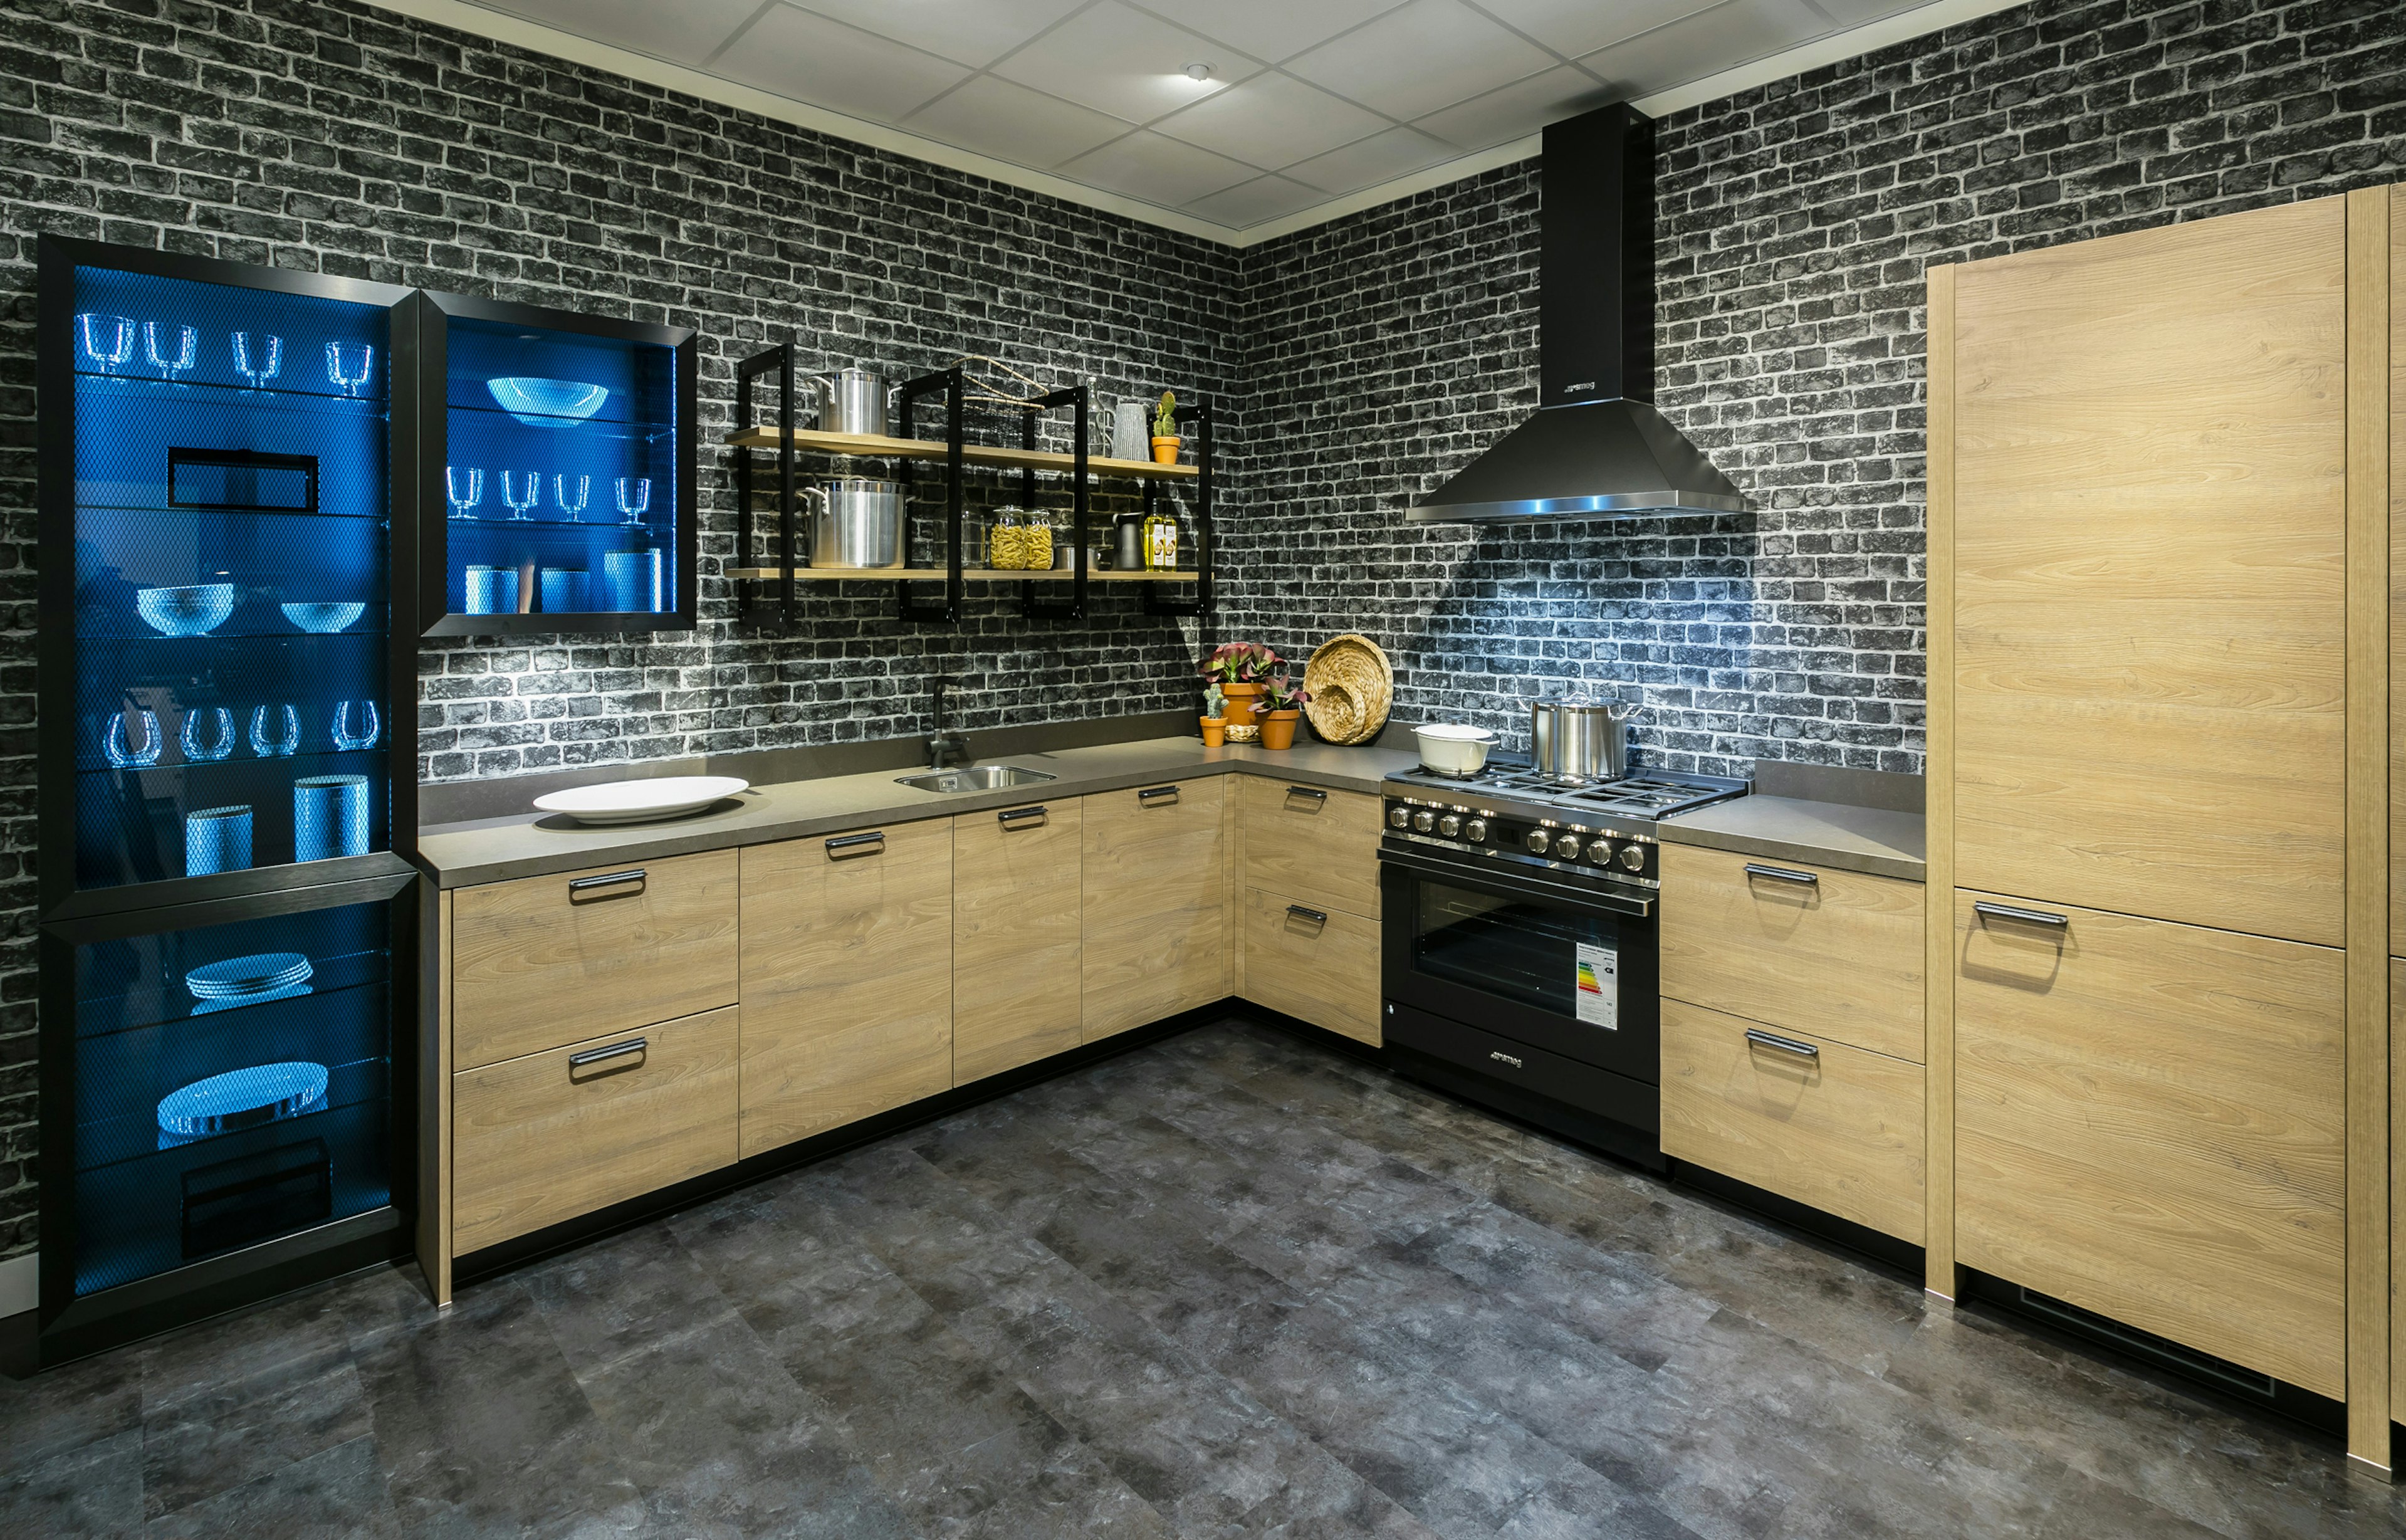 Een industriële keuken met materialen van beton, baksteen, hout en metaal.